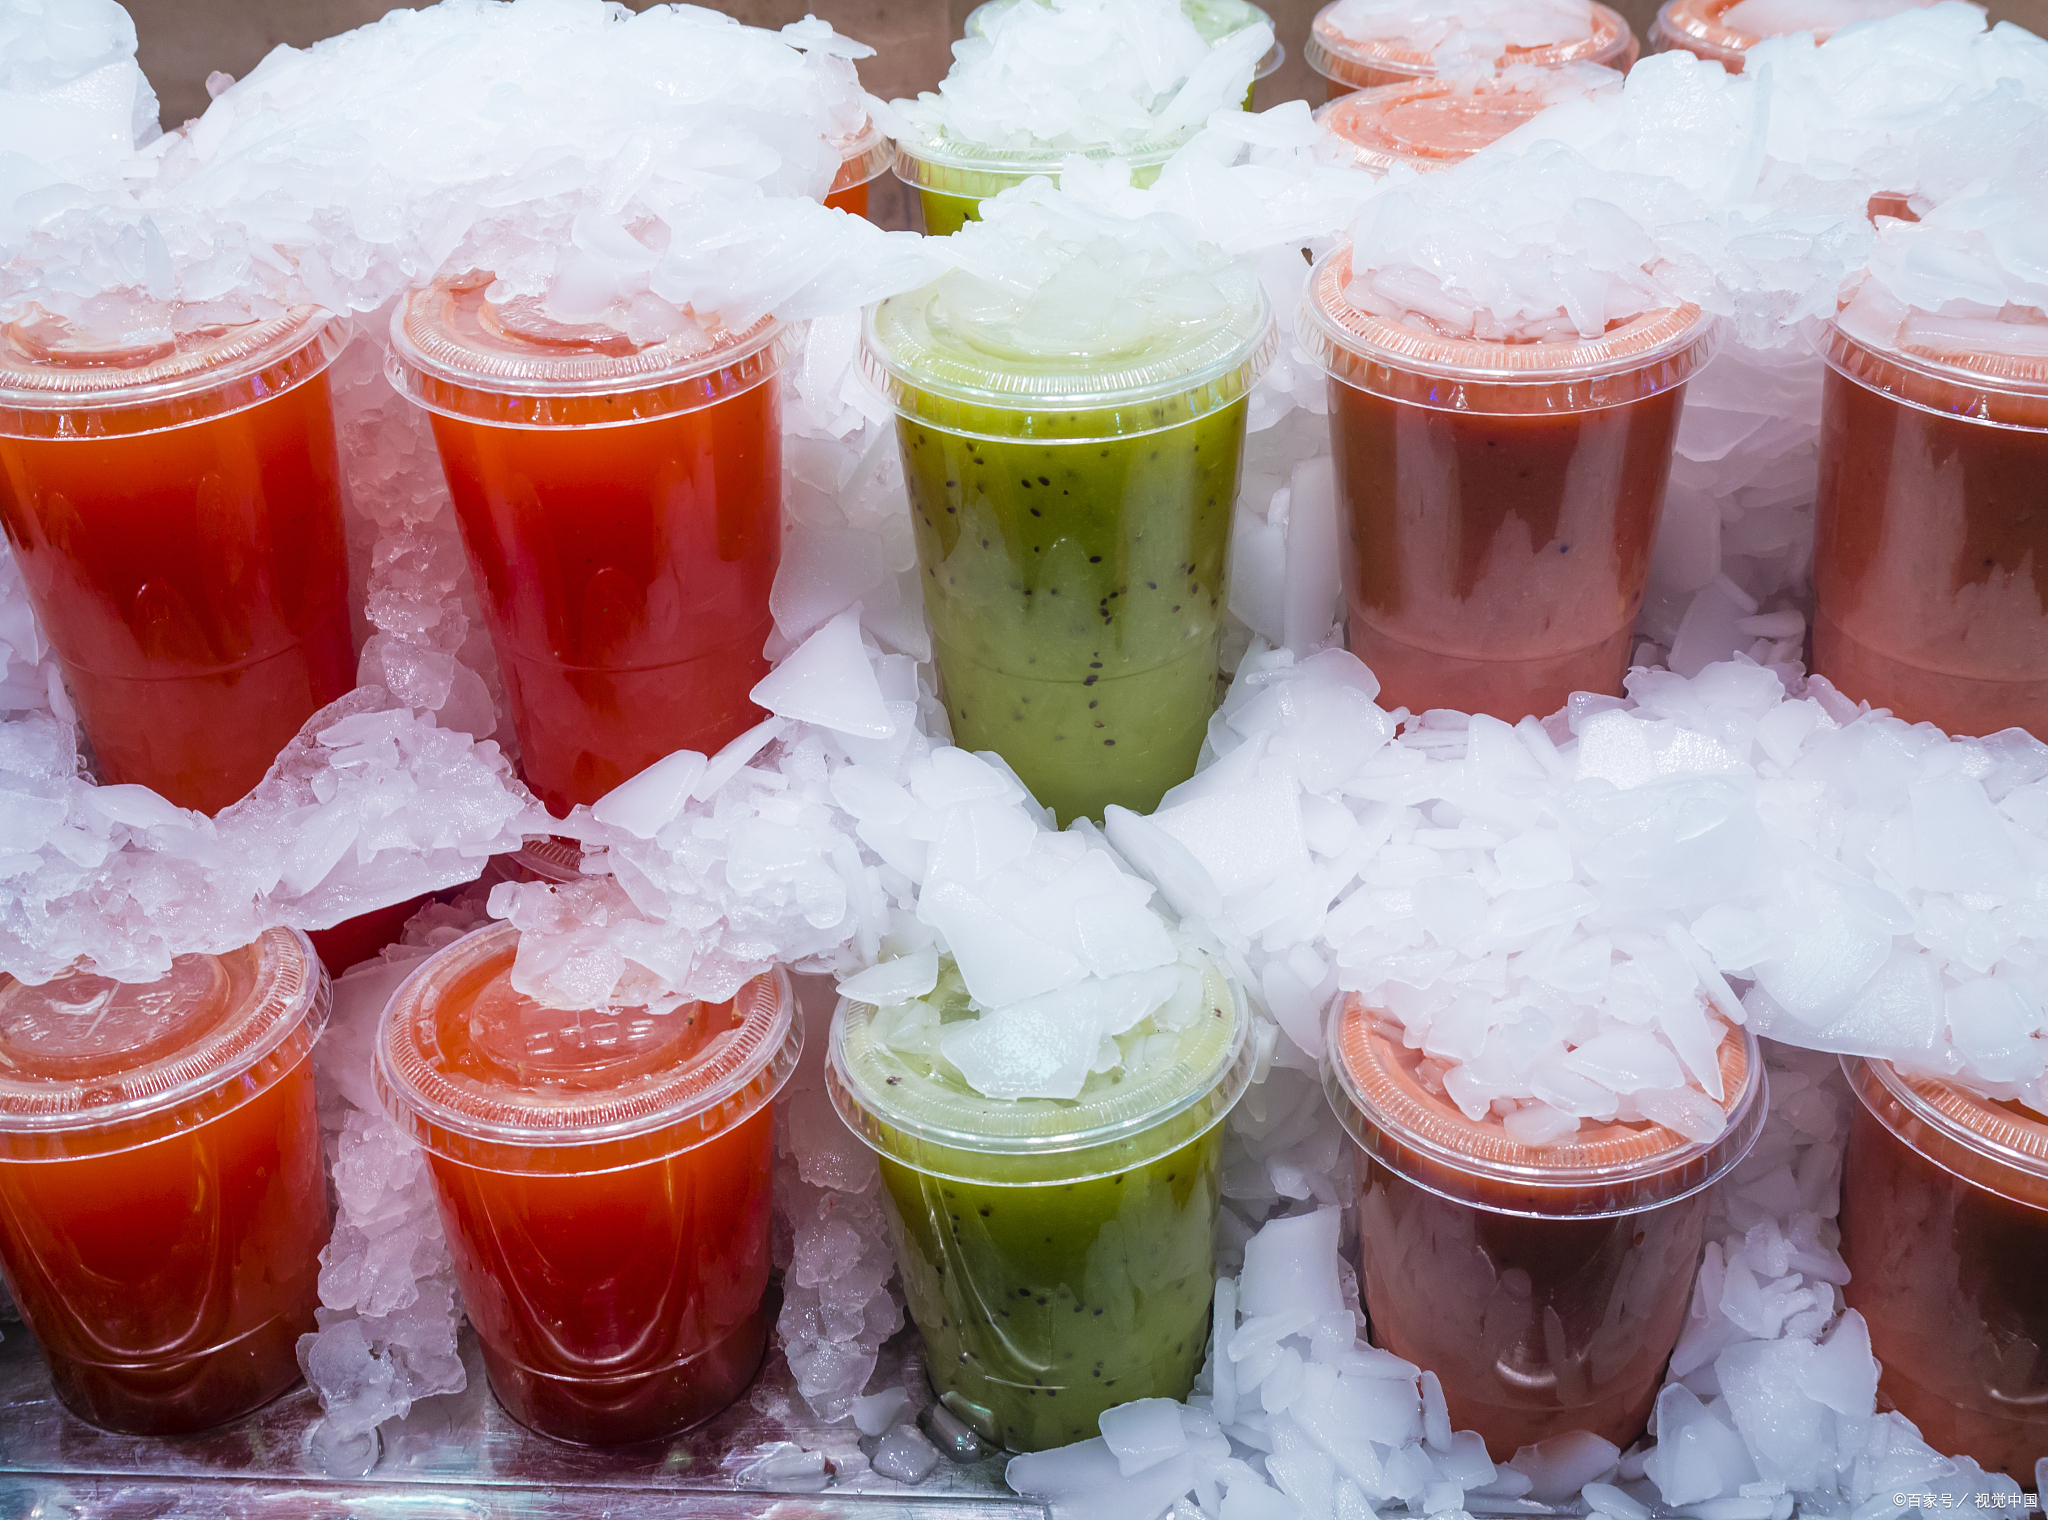 为何夏天常吃冷饮会对身体有害?来了解一下冷饮的真相!